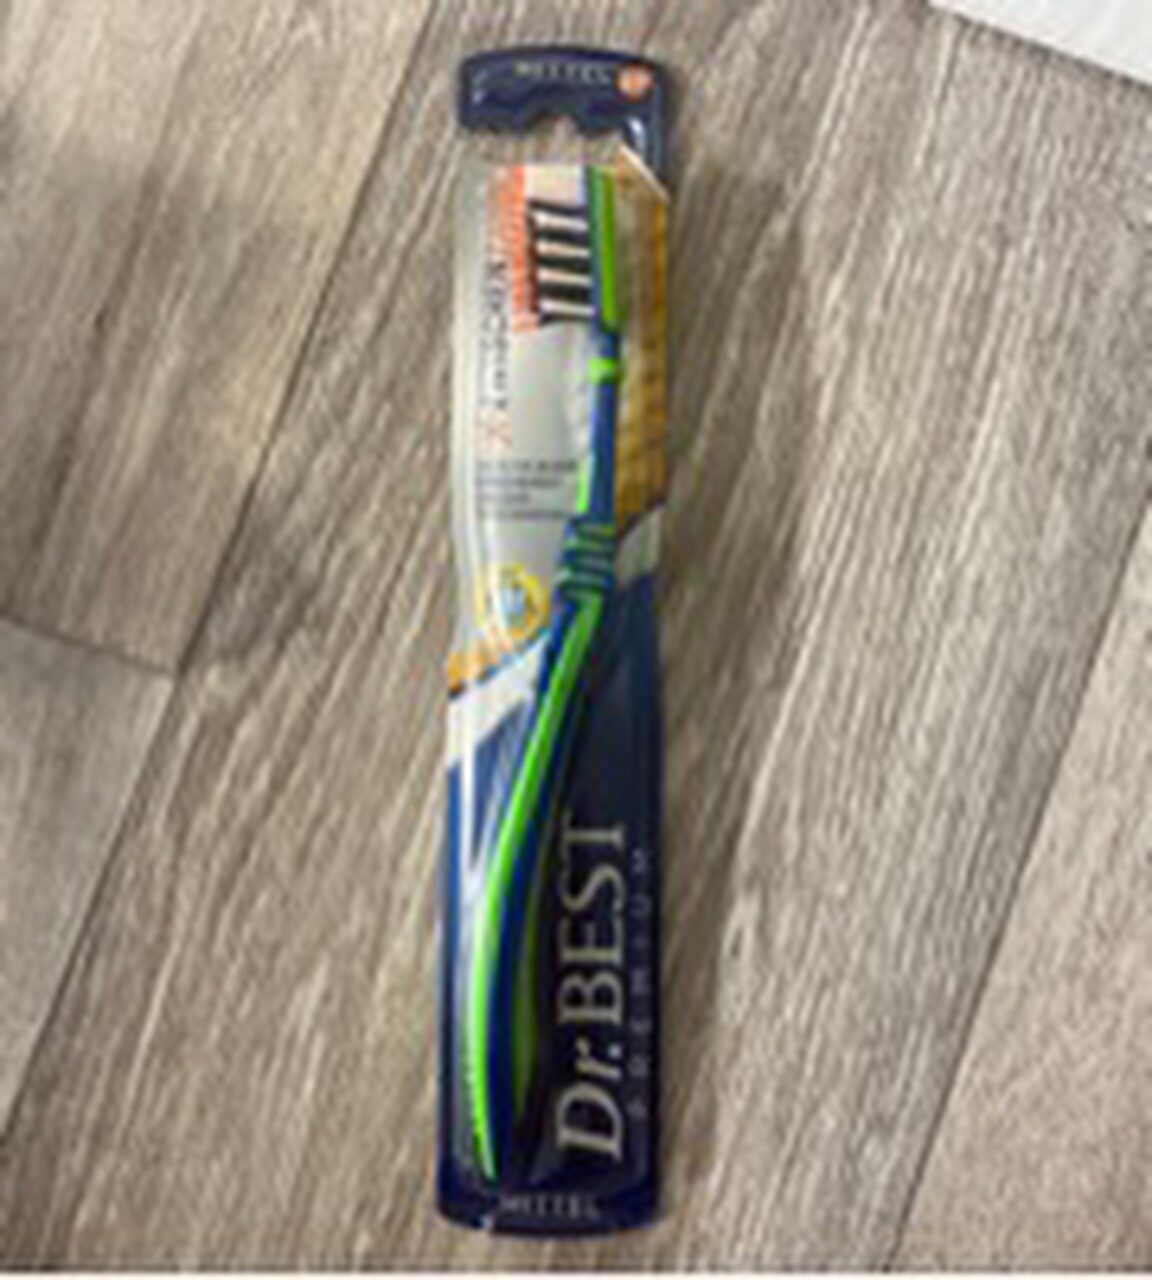 Zahnbürste - Product - de